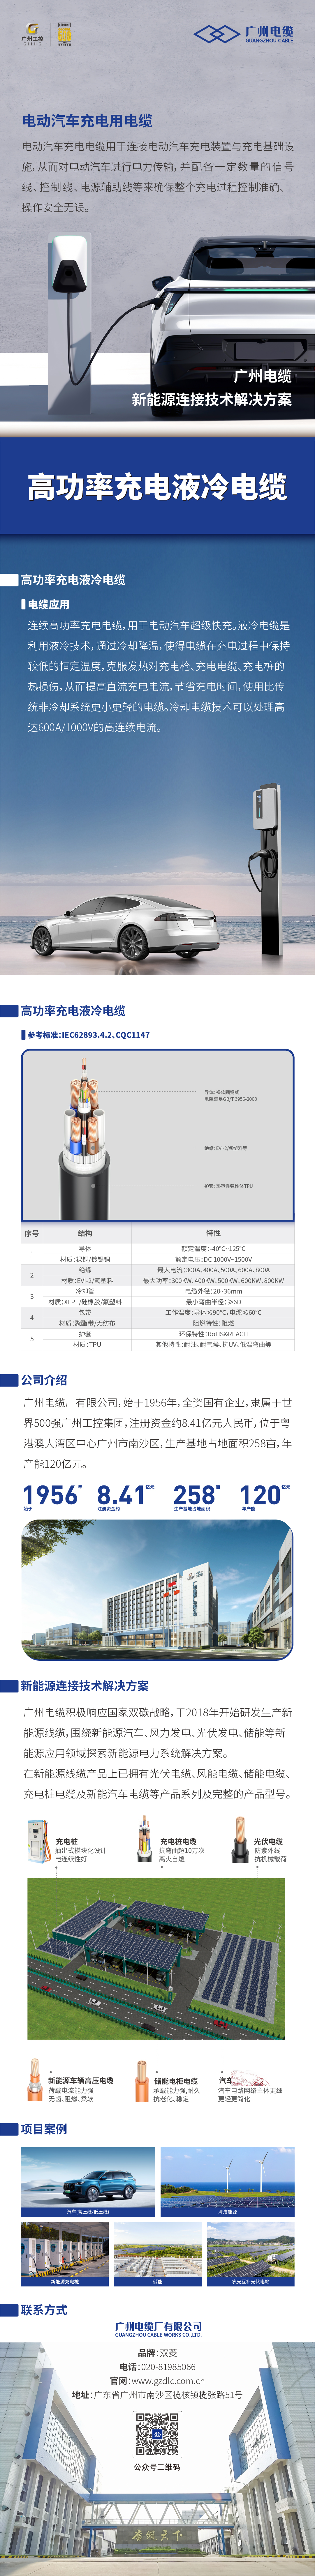 广州电缆-高功率充电液冷电缆.jpg